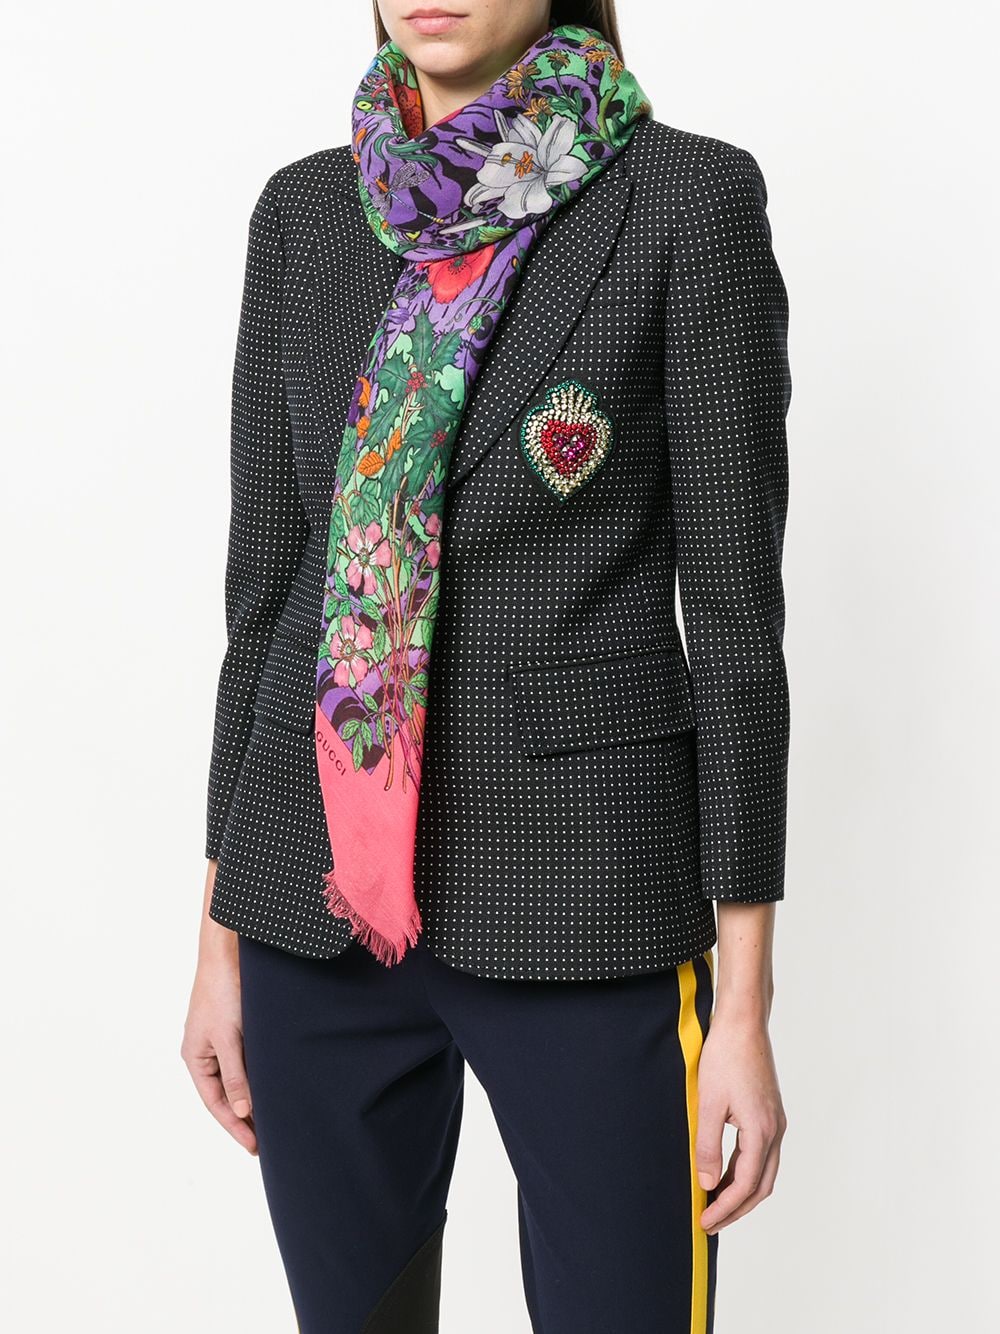 фото Gucci платок с цветочным принтом